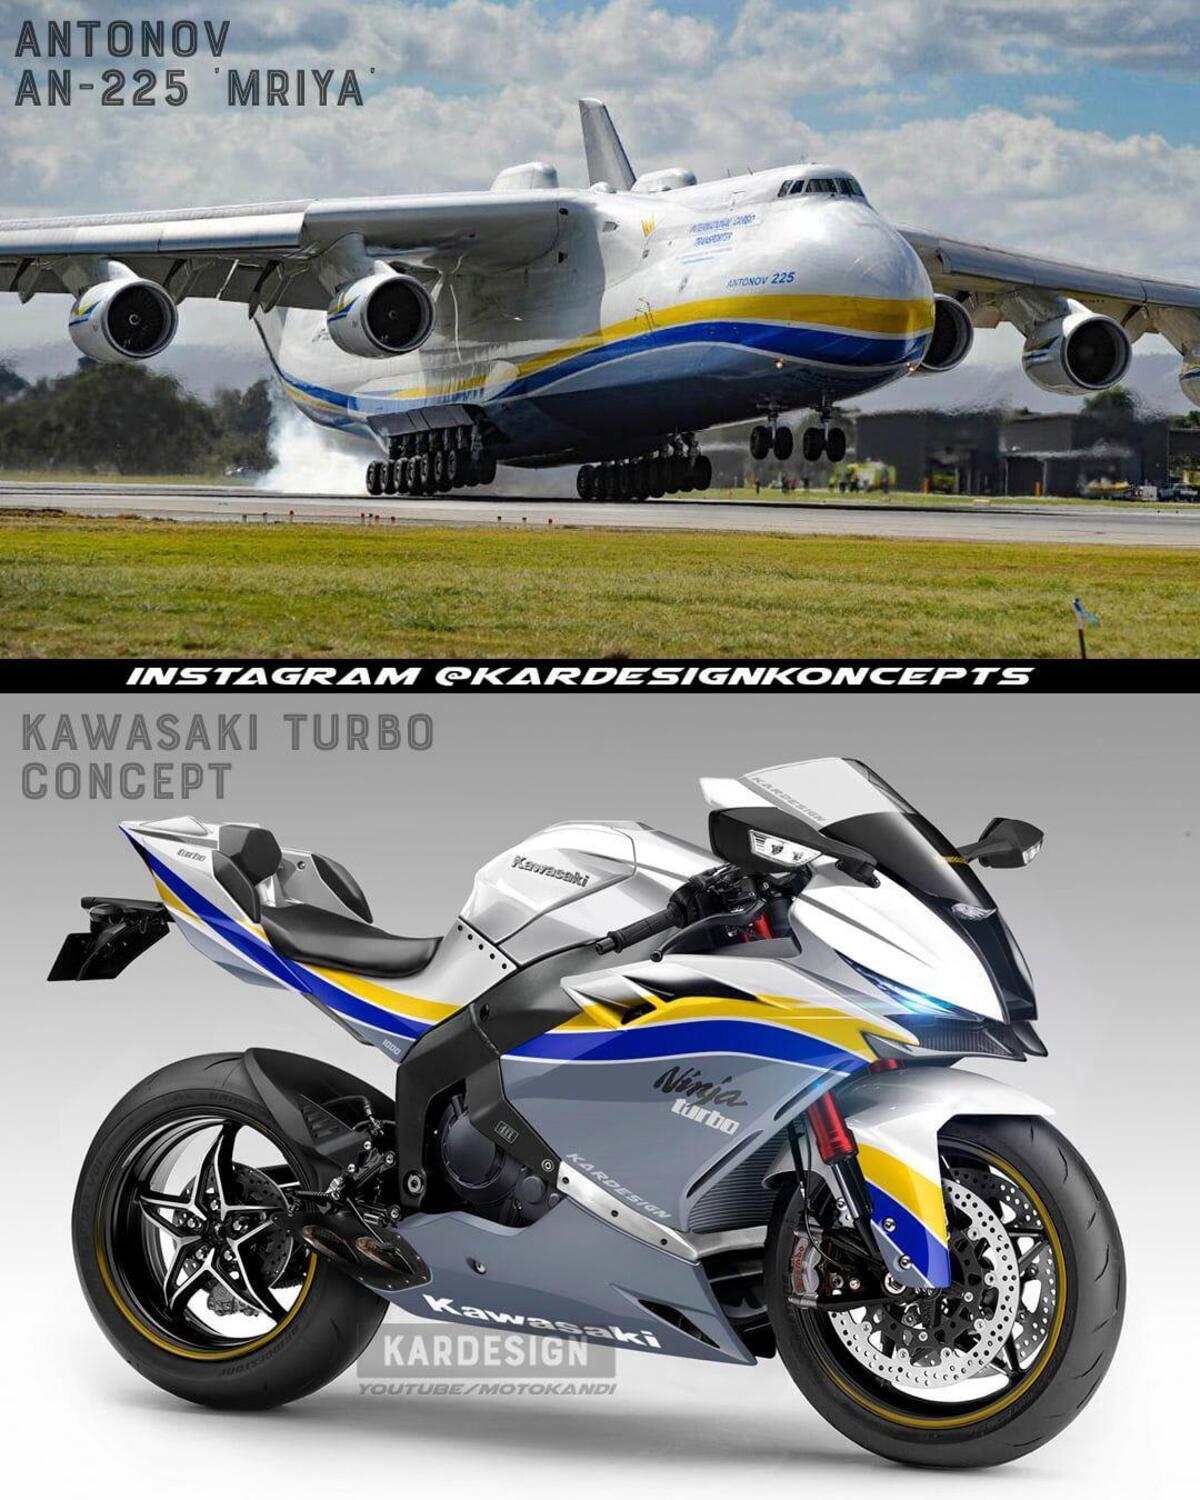 Kawasaki Ninja en colores Antonov ucranianos – Noticias